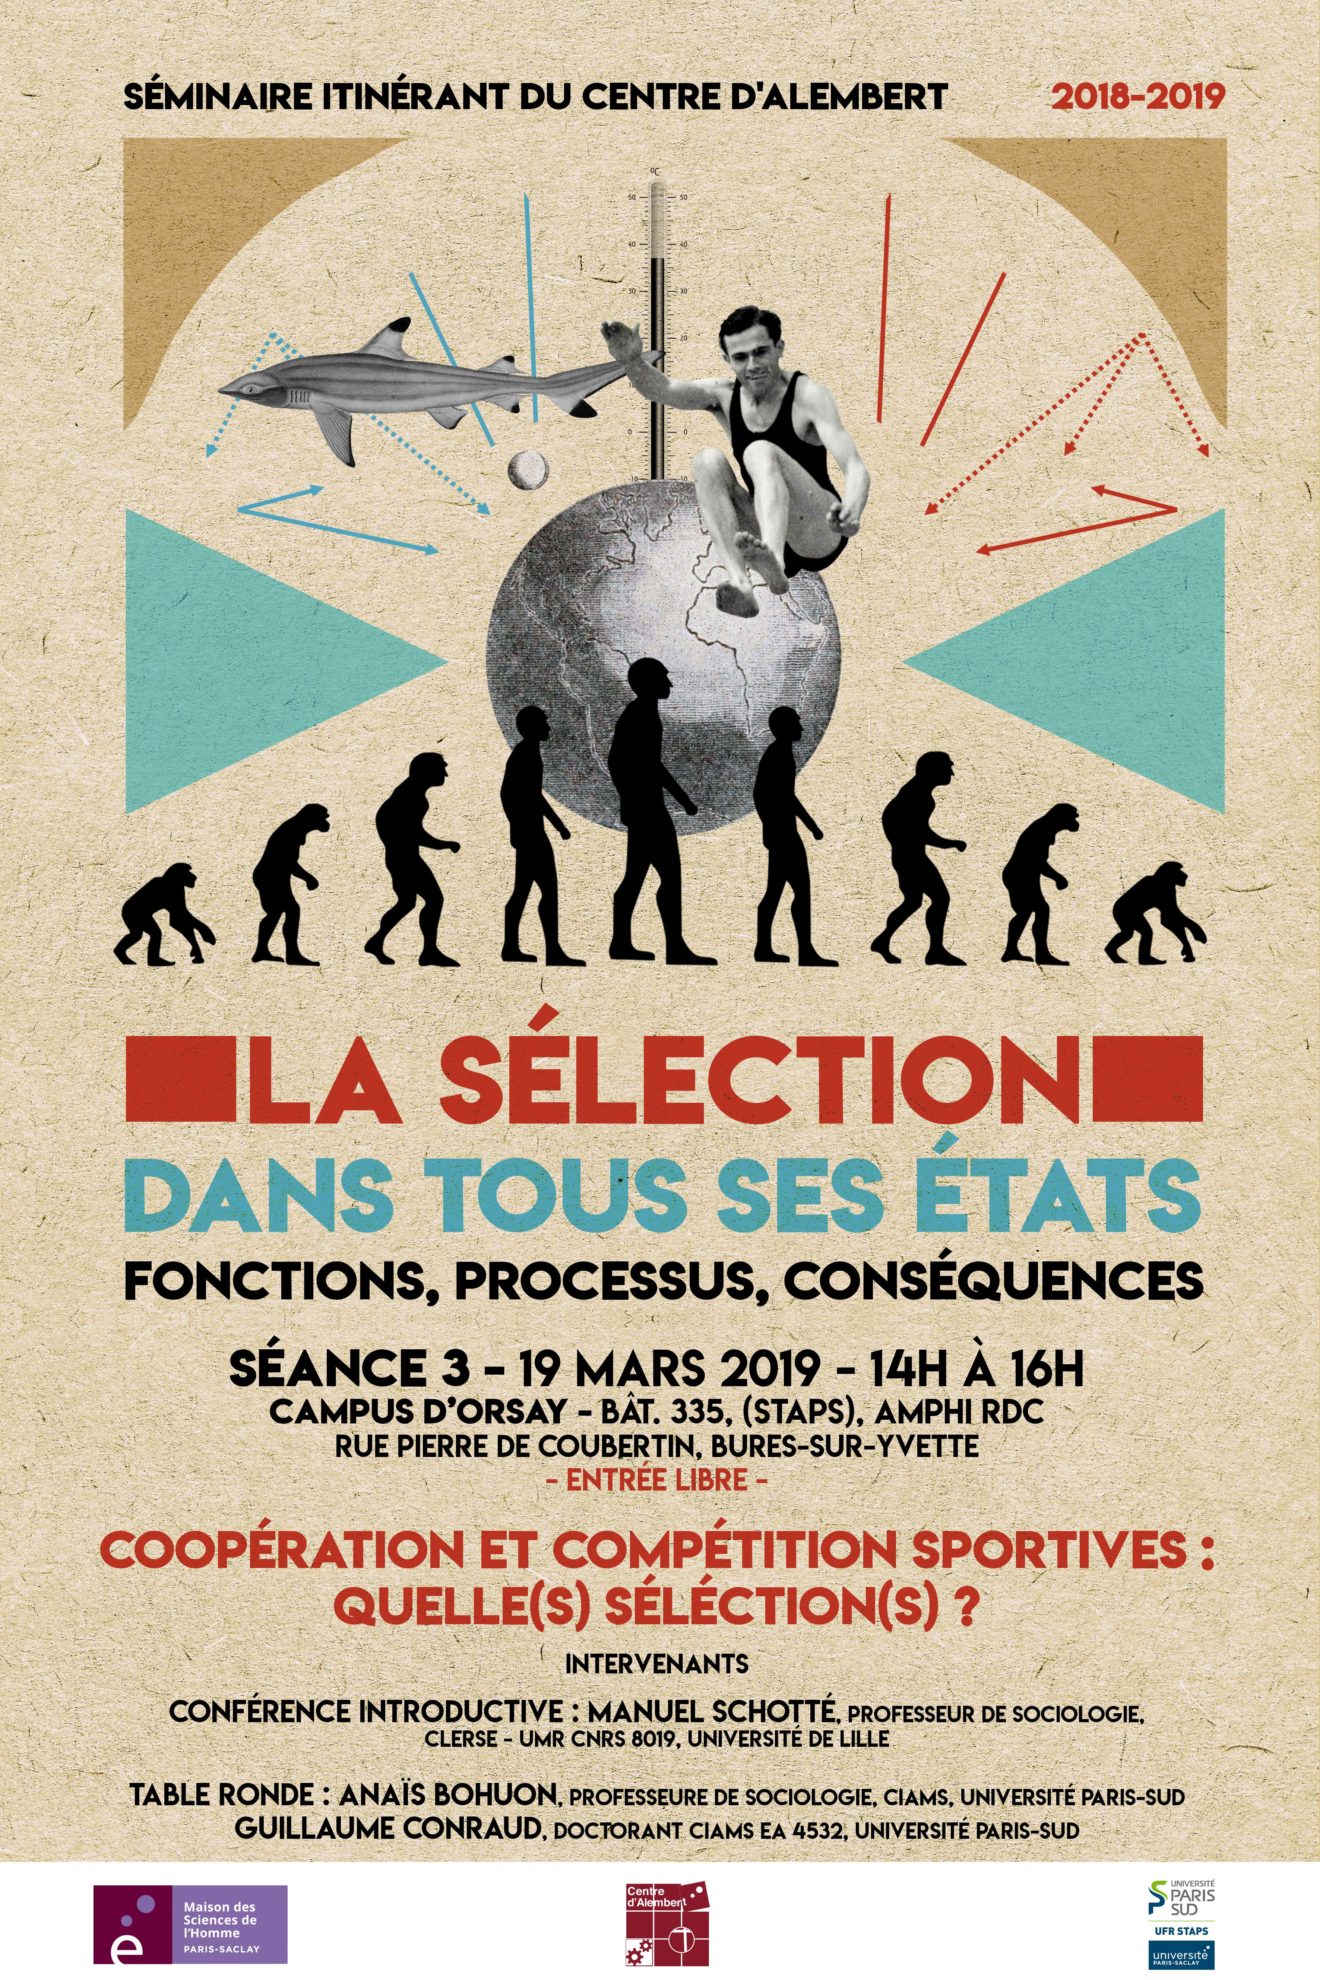 Séminaire du Centre d'Alembert : "Coopération et compétition sportives : quelle(s) sélection(s) ?" - 19/03/2019